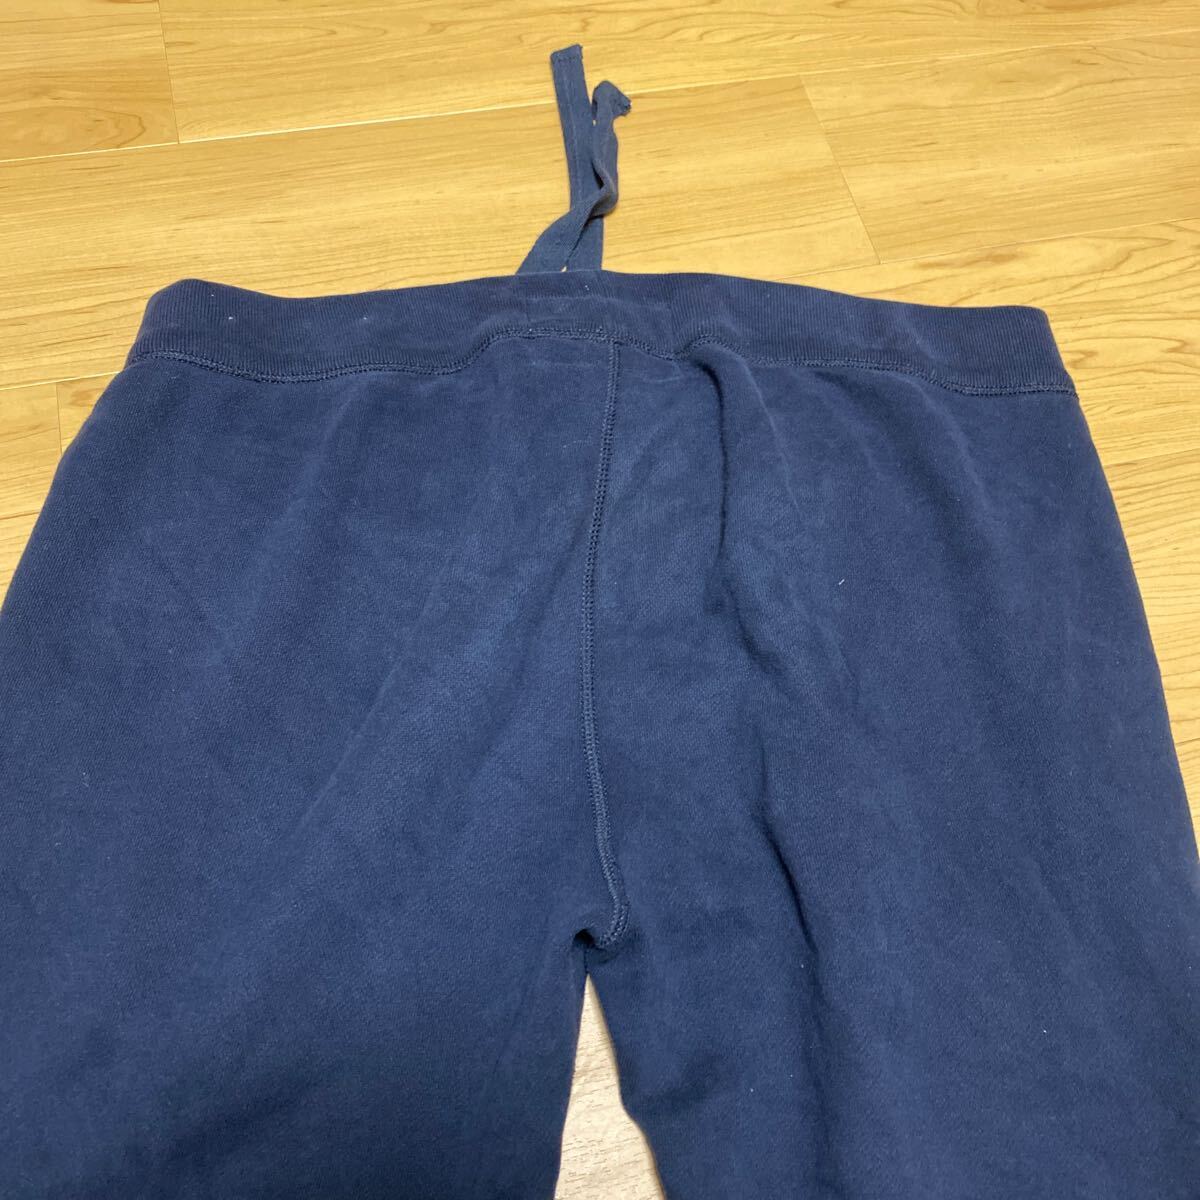  Abercrombie & Fitch sweat pants pants XL Abercrombie & Fitch men's regular goods strut 